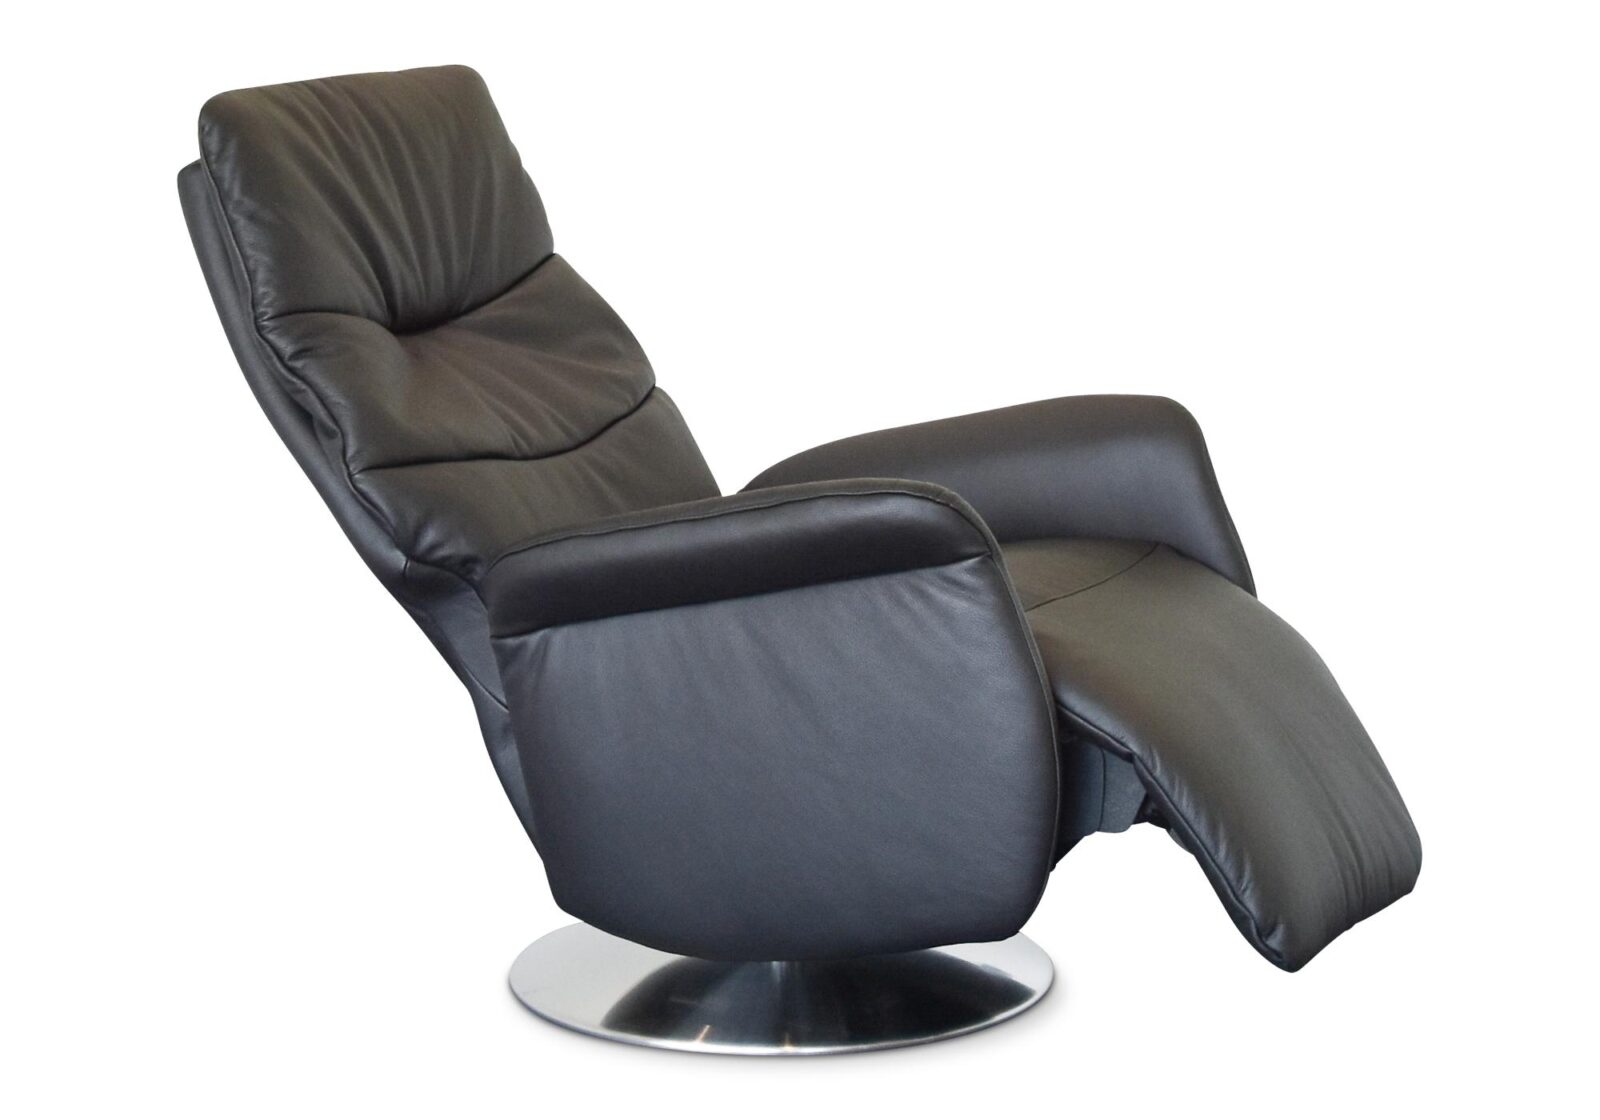 Relaxsessel Gobi  manuell verstellbar. Bezug: Leder. Farbe: Schwarz. Erhältlich bei Möbel Gallati.